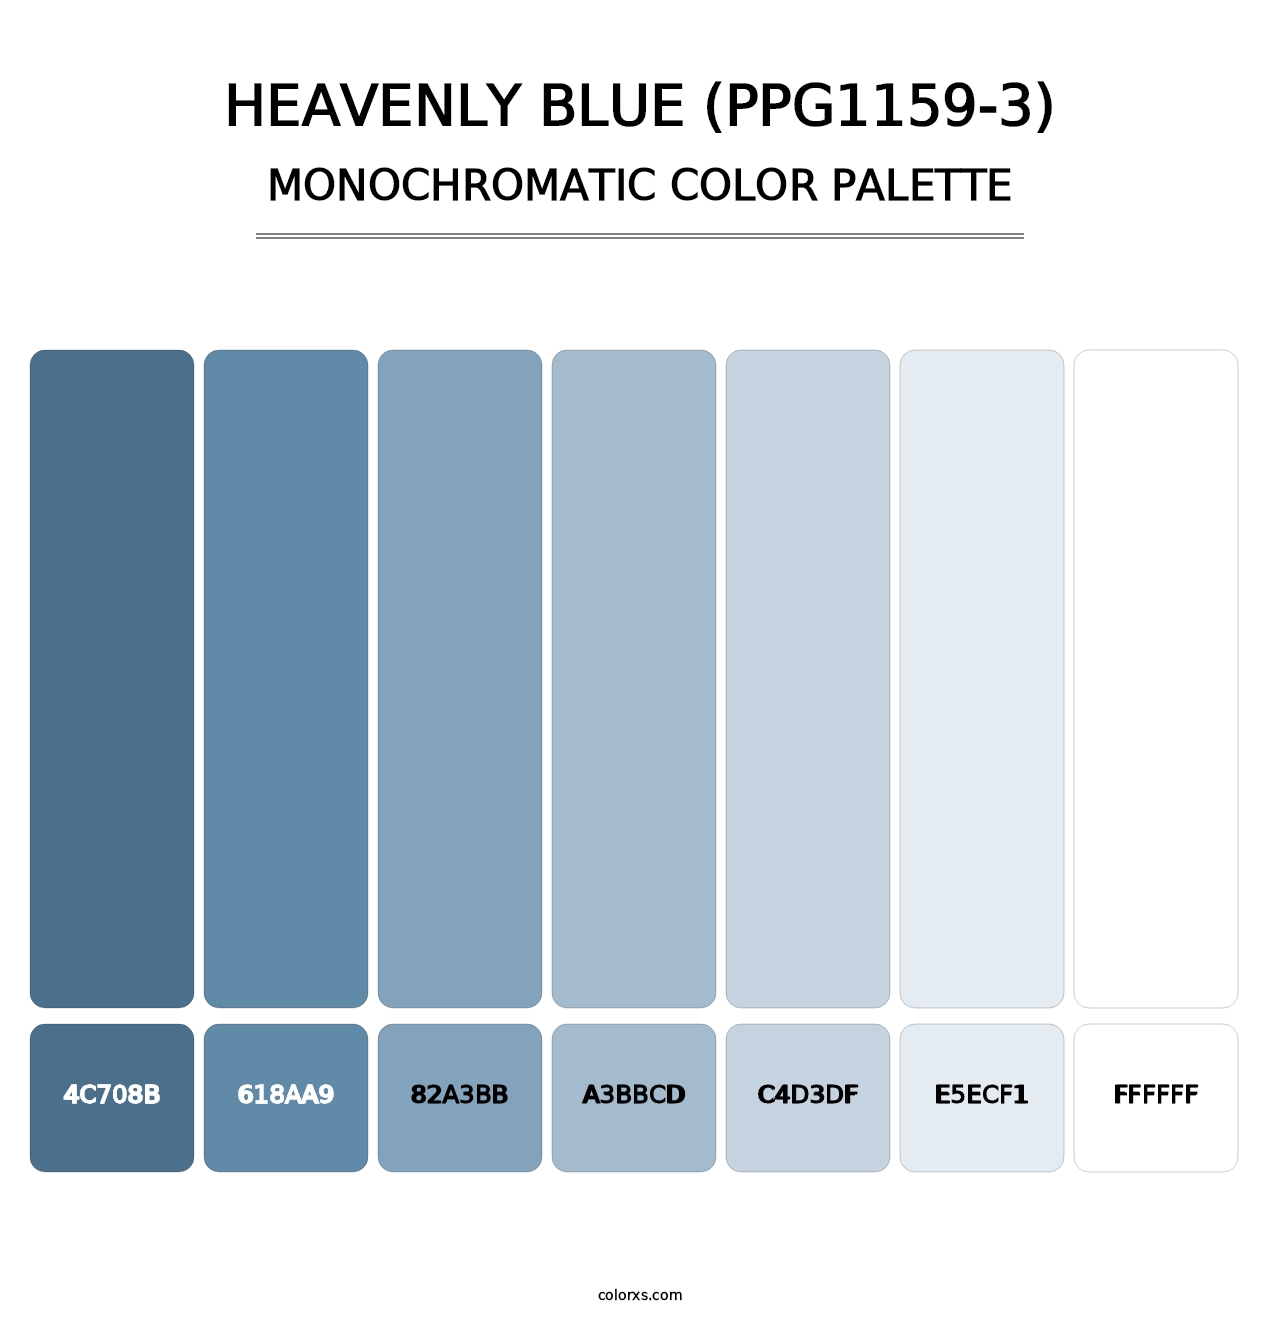 Heavenly Blue (PPG1159-3) - Monochromatic Color Palette